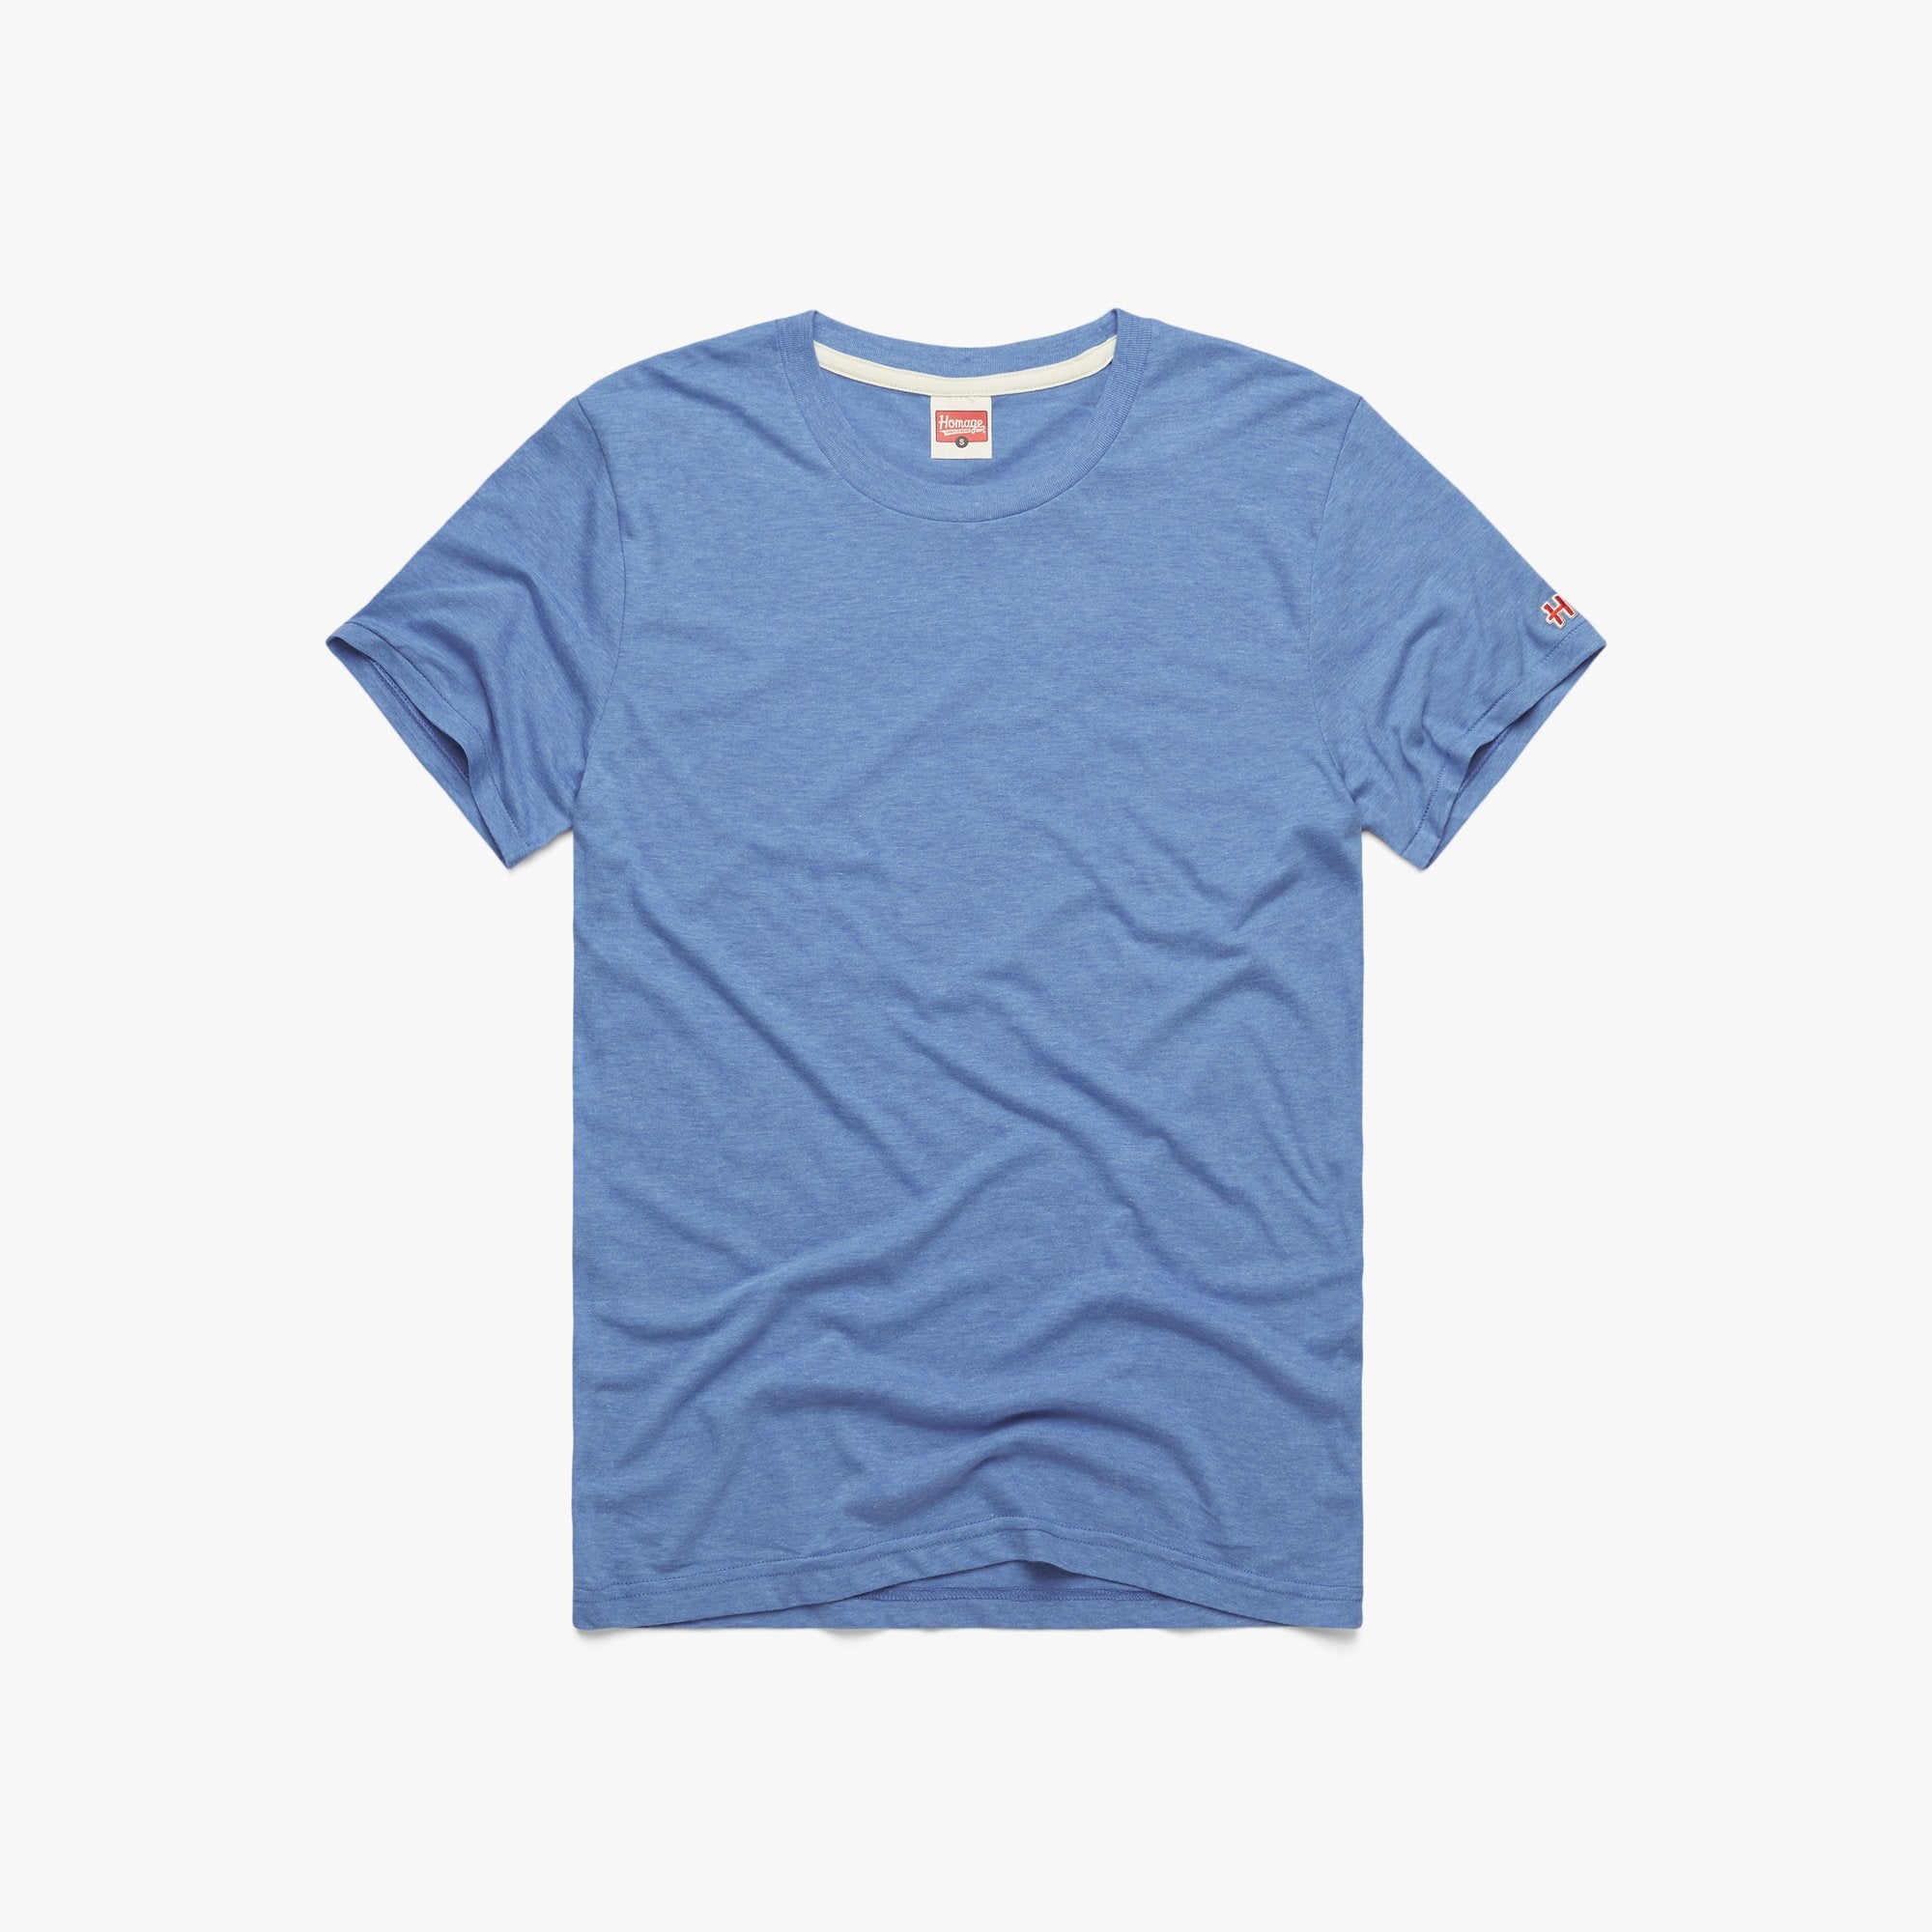 Summer With Joe T-shirt blue 